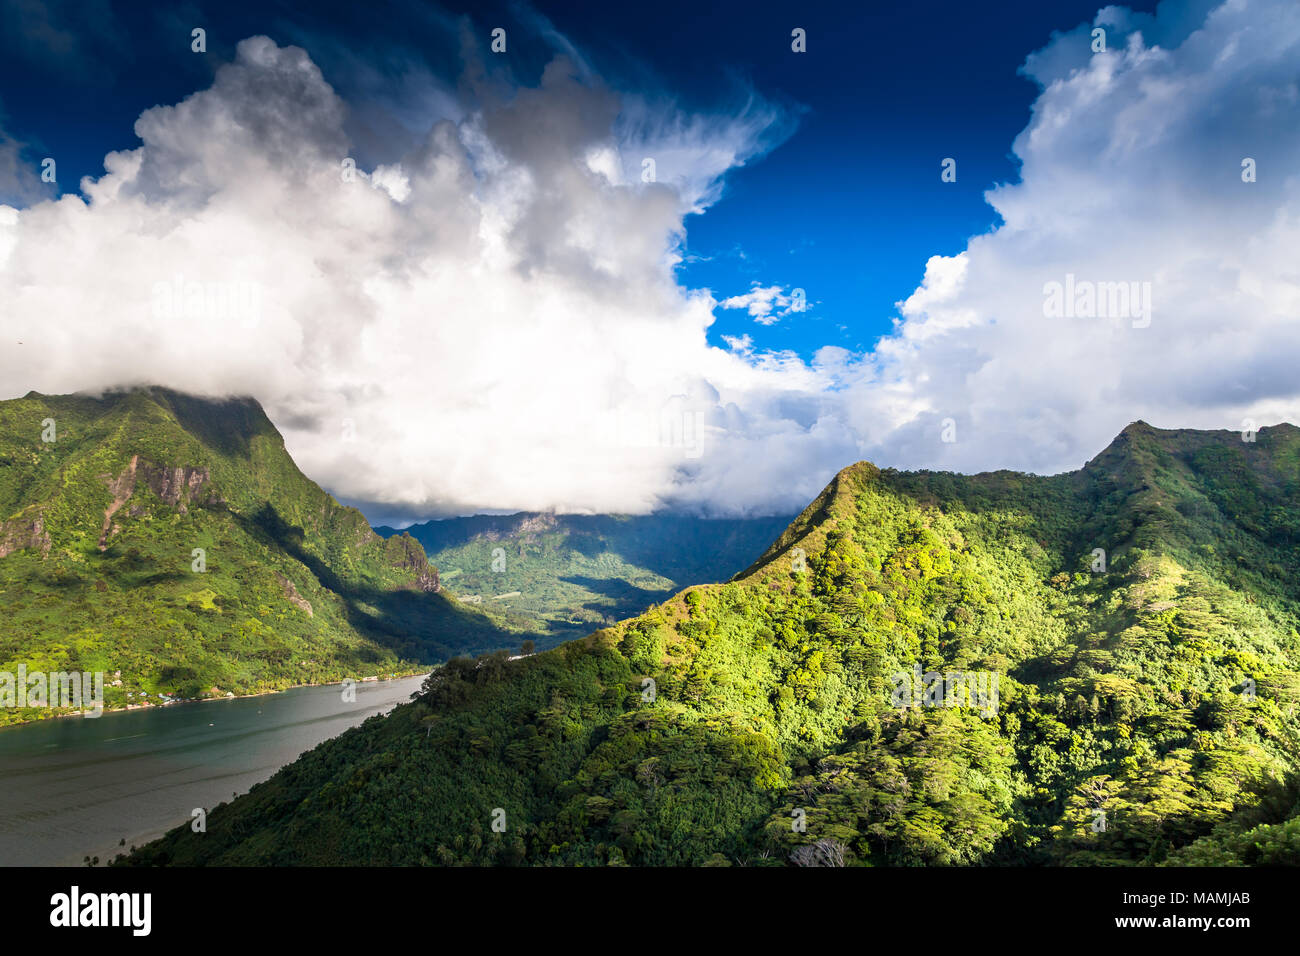 Insel Moorea in Französisch Polynesien. Stockfoto